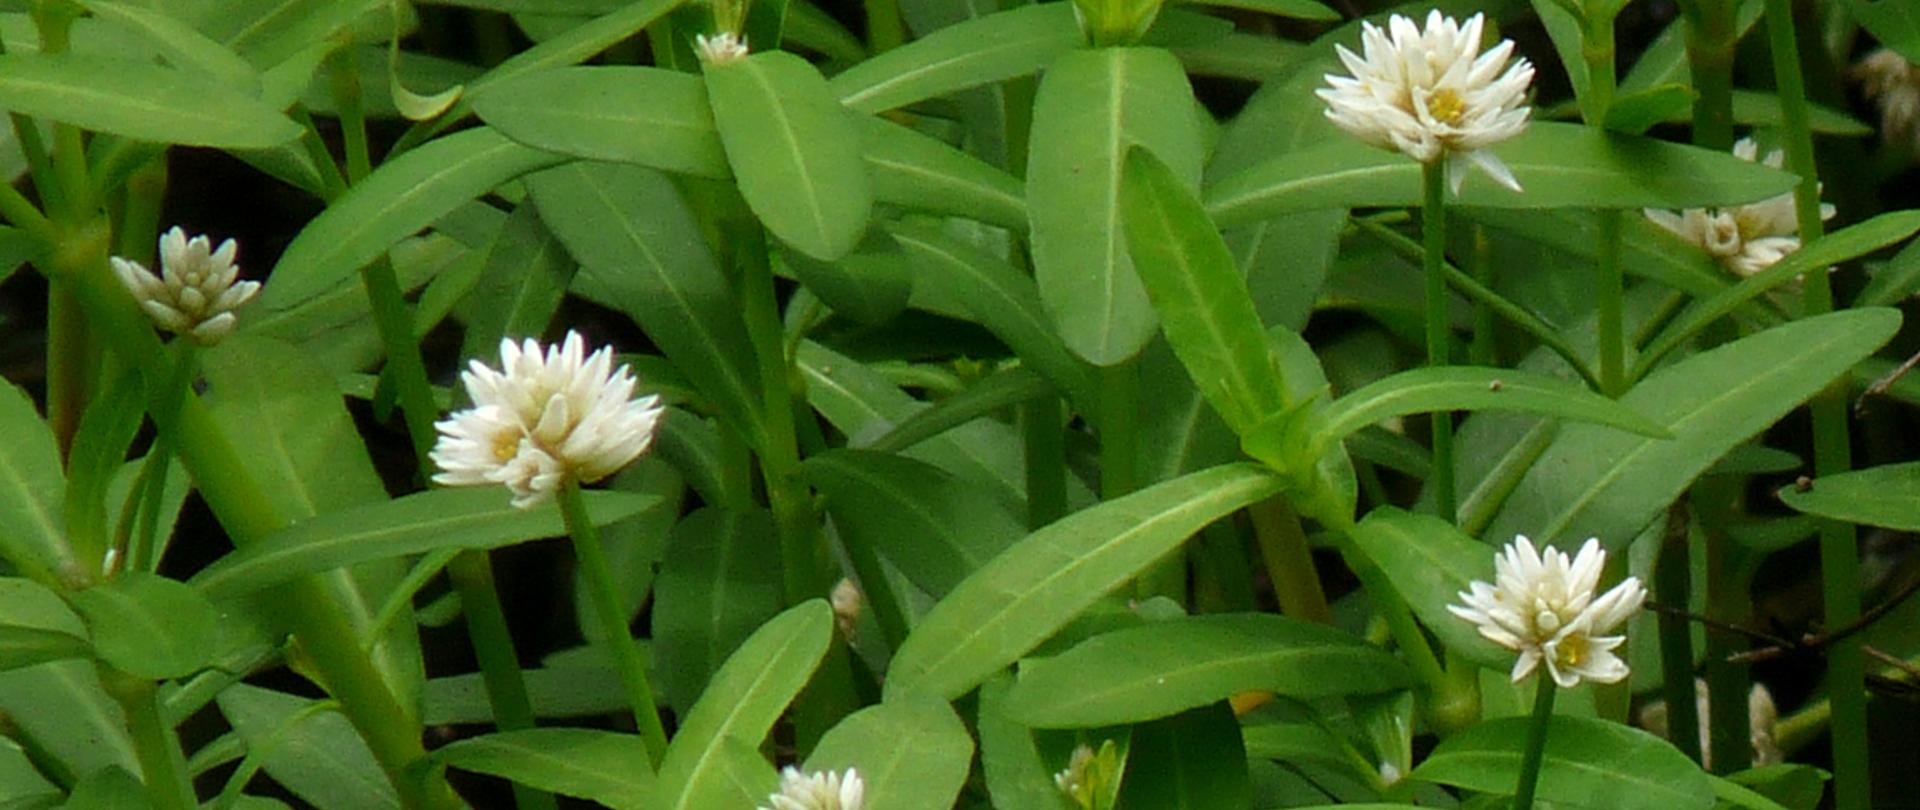 Na zdjęciu liczne białe kwiatostany Alternanthera philoxeroides wśród zielonych liści i łodyg tej rośliny.